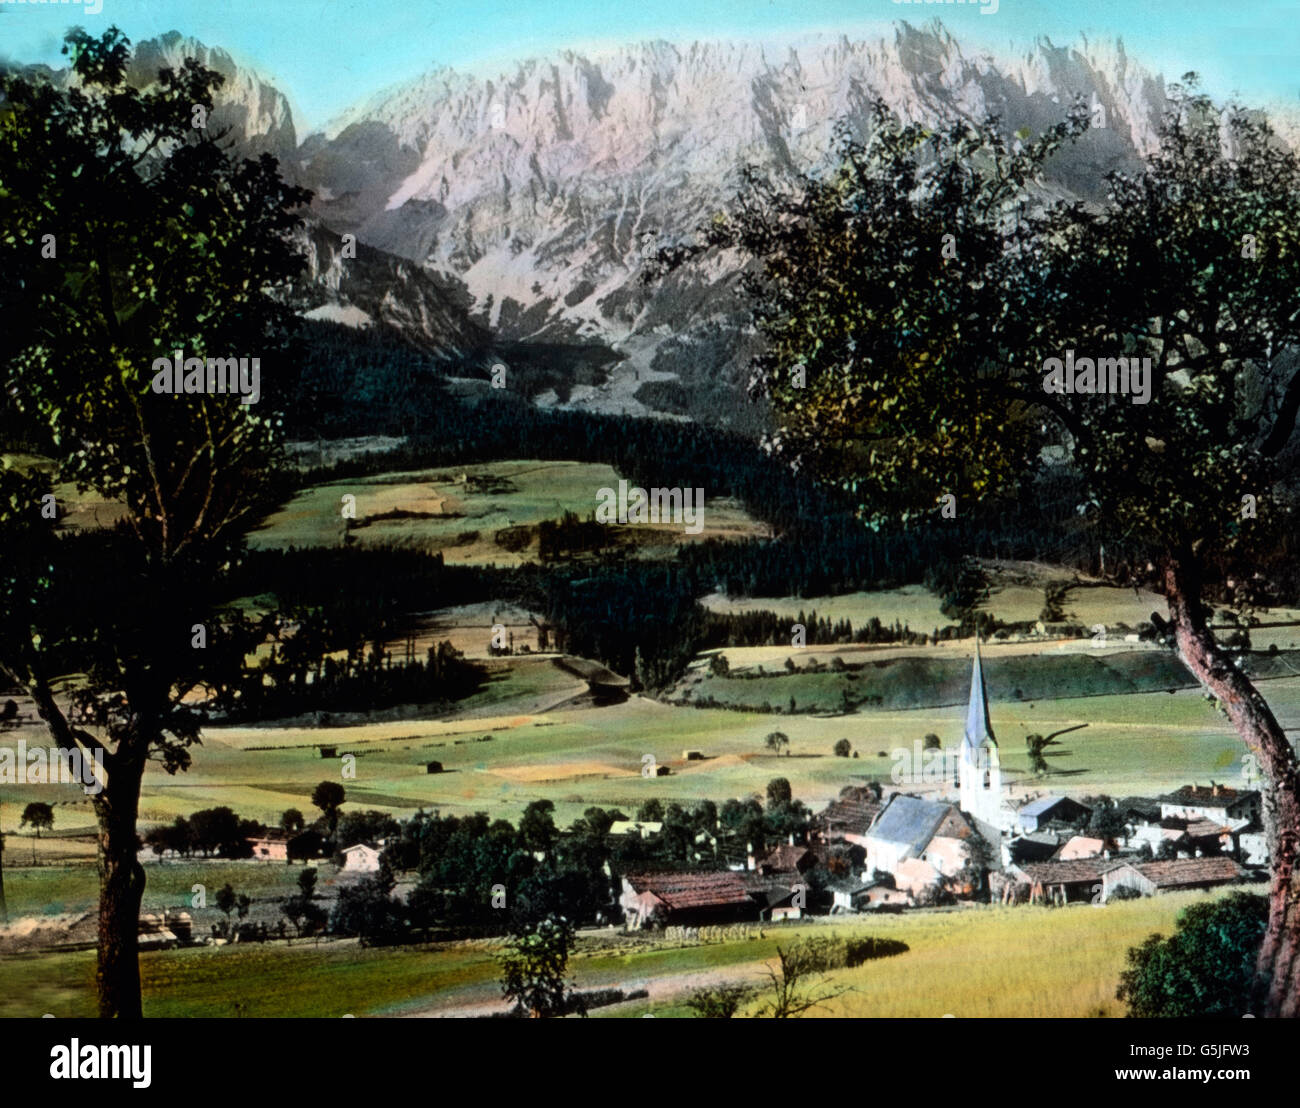 Malerisch gelegenes Dorf in Tirol, 1920er Jahre. Village de paysage pittoresque du Tyrol, années 20. Banque D'Images